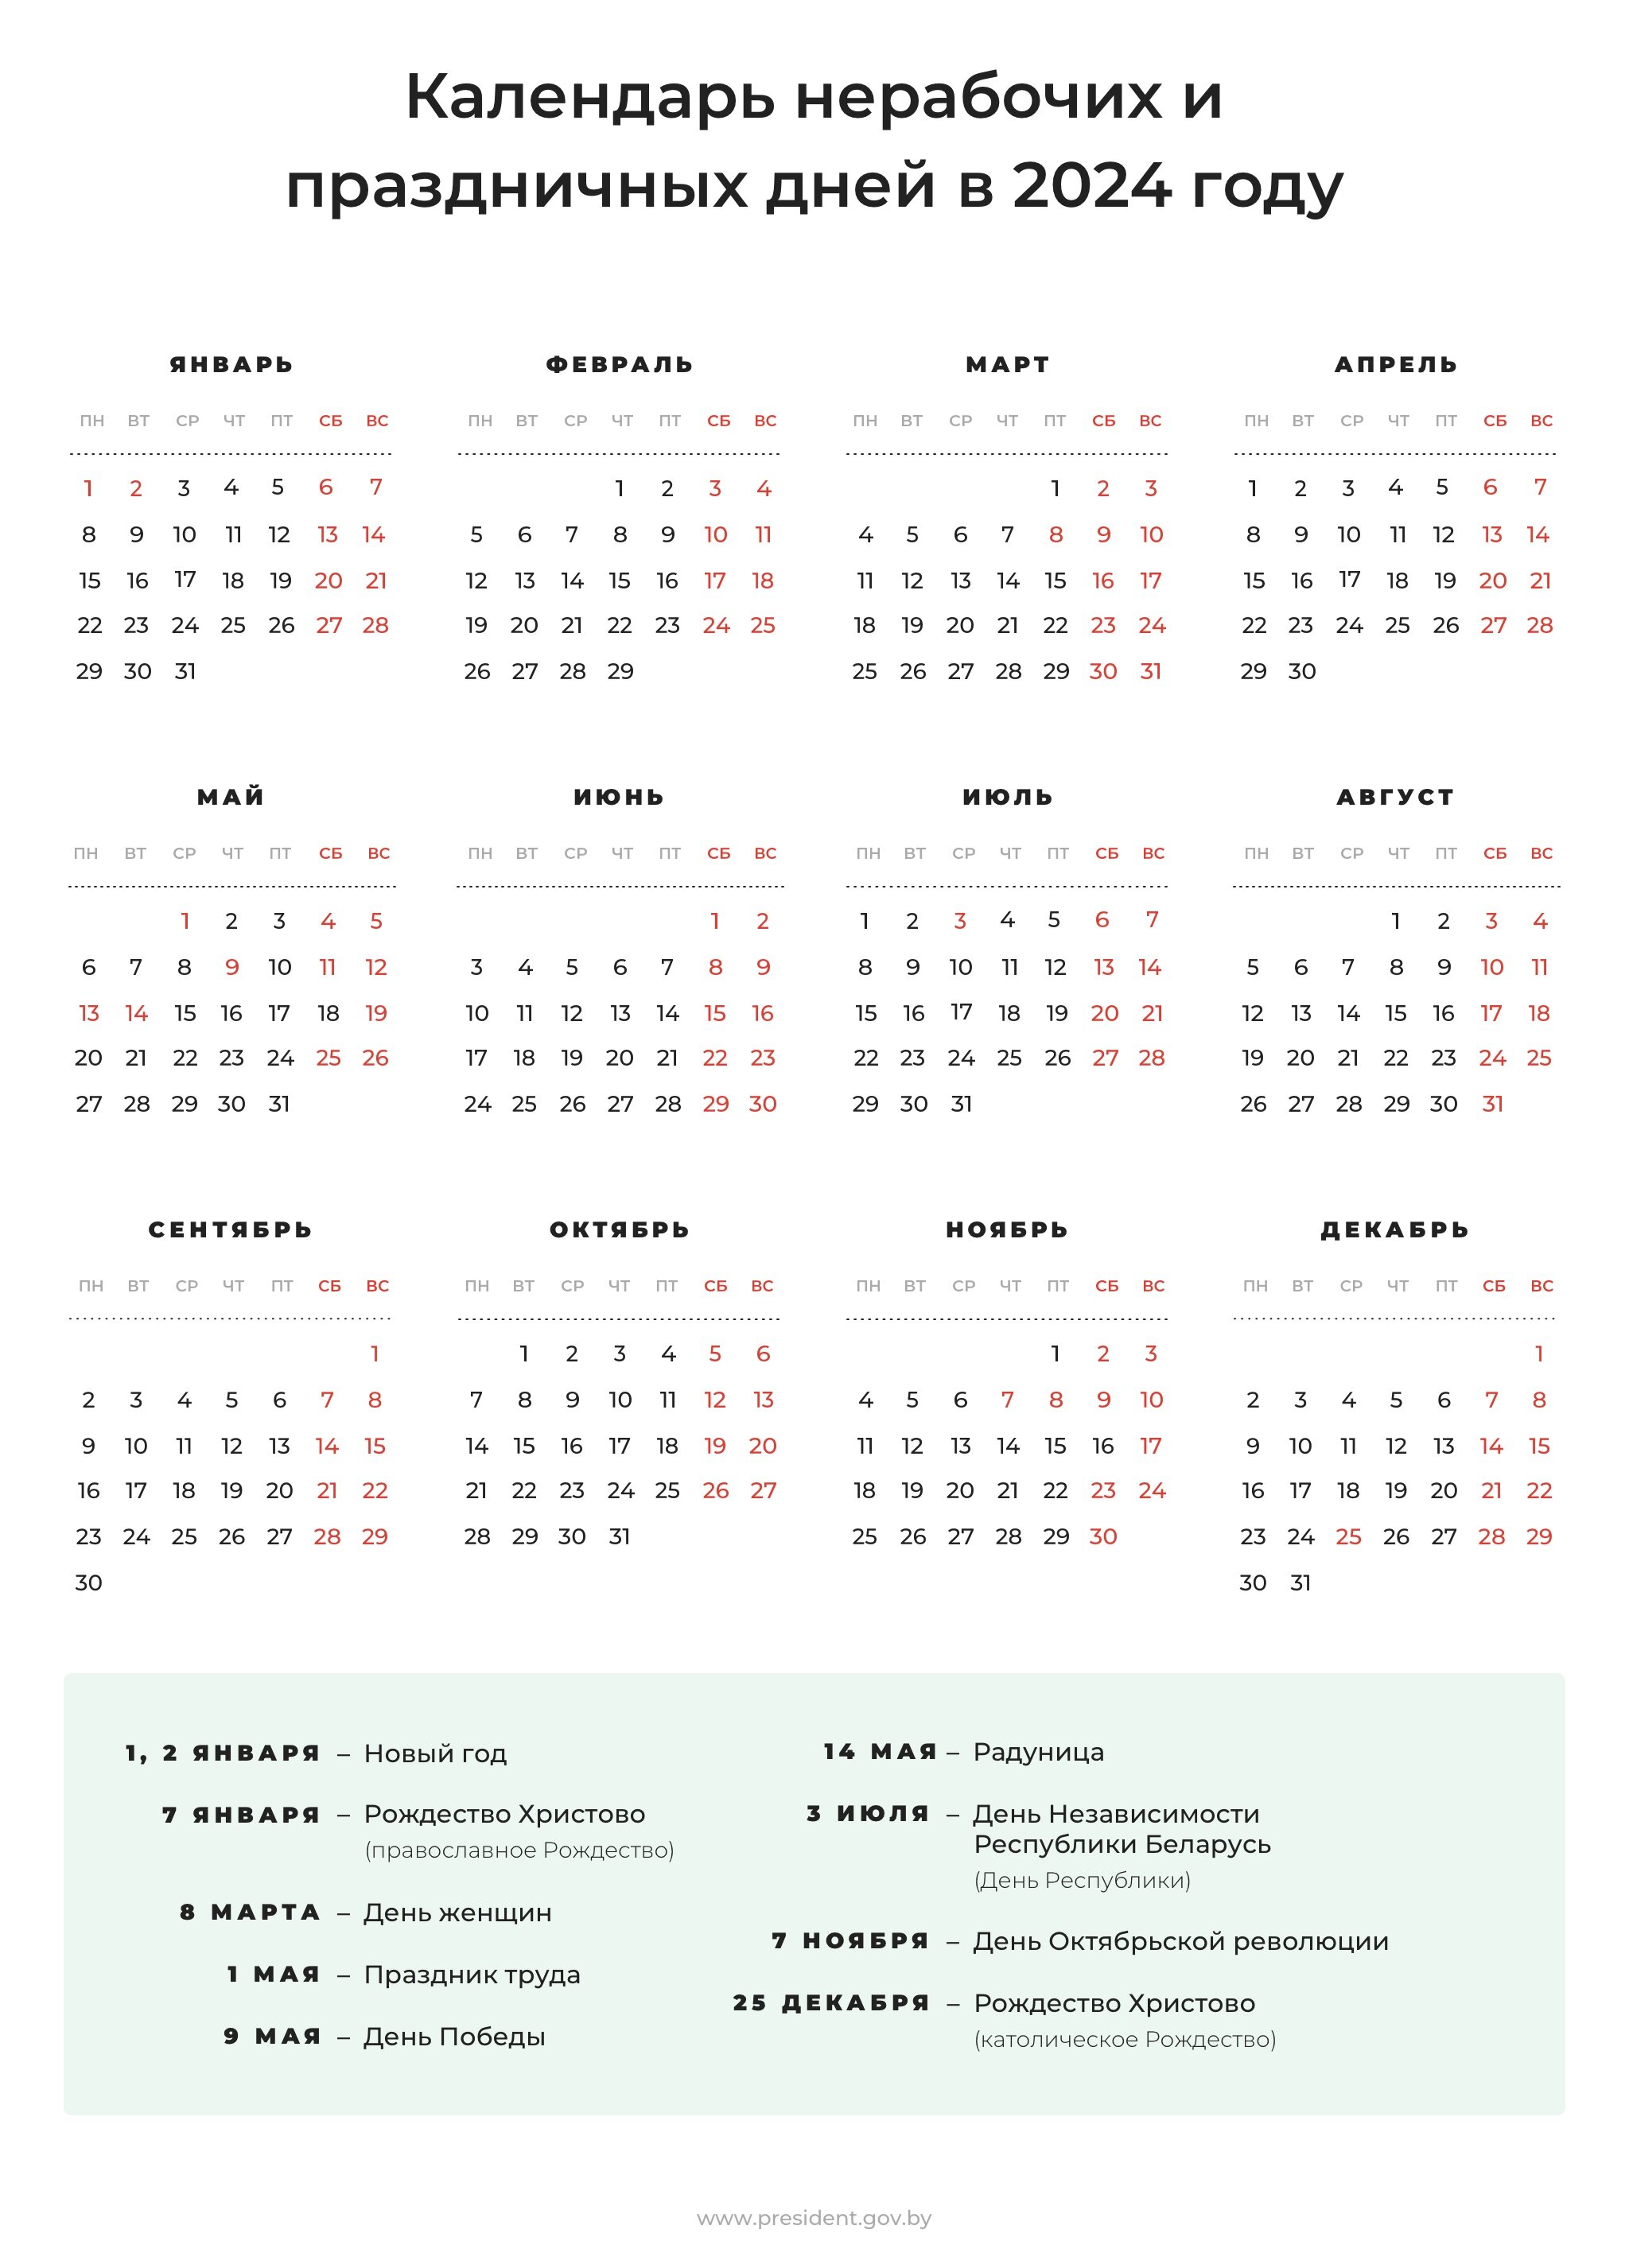 Календарь праздничных и нерабочих дней на 2024 год | Официальный  интернет-портал Президента Республики Беларусь